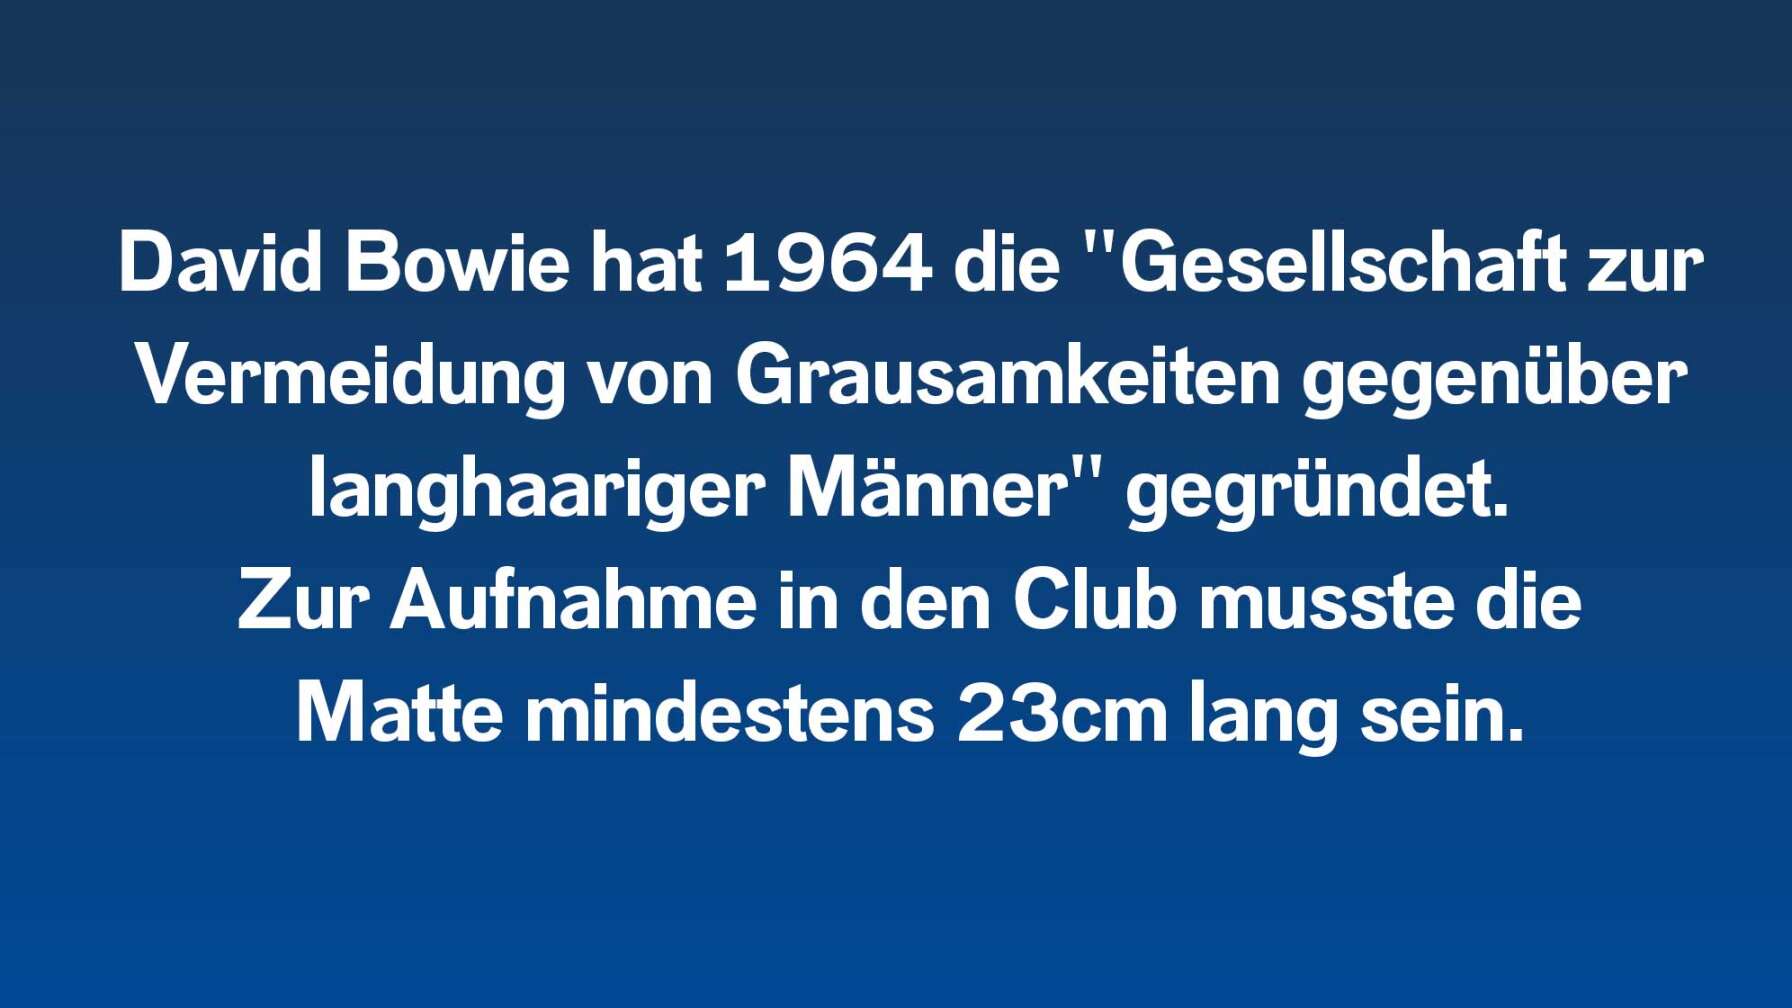 David Bowie hat 1964 die "Gesellschaft zur Vermeidung von Grausamkeiten gegenüber langhaariger Männer" gegründet.  Zur Aufnahme in den Club musste die  Matte mindestens 23cm lang sein.